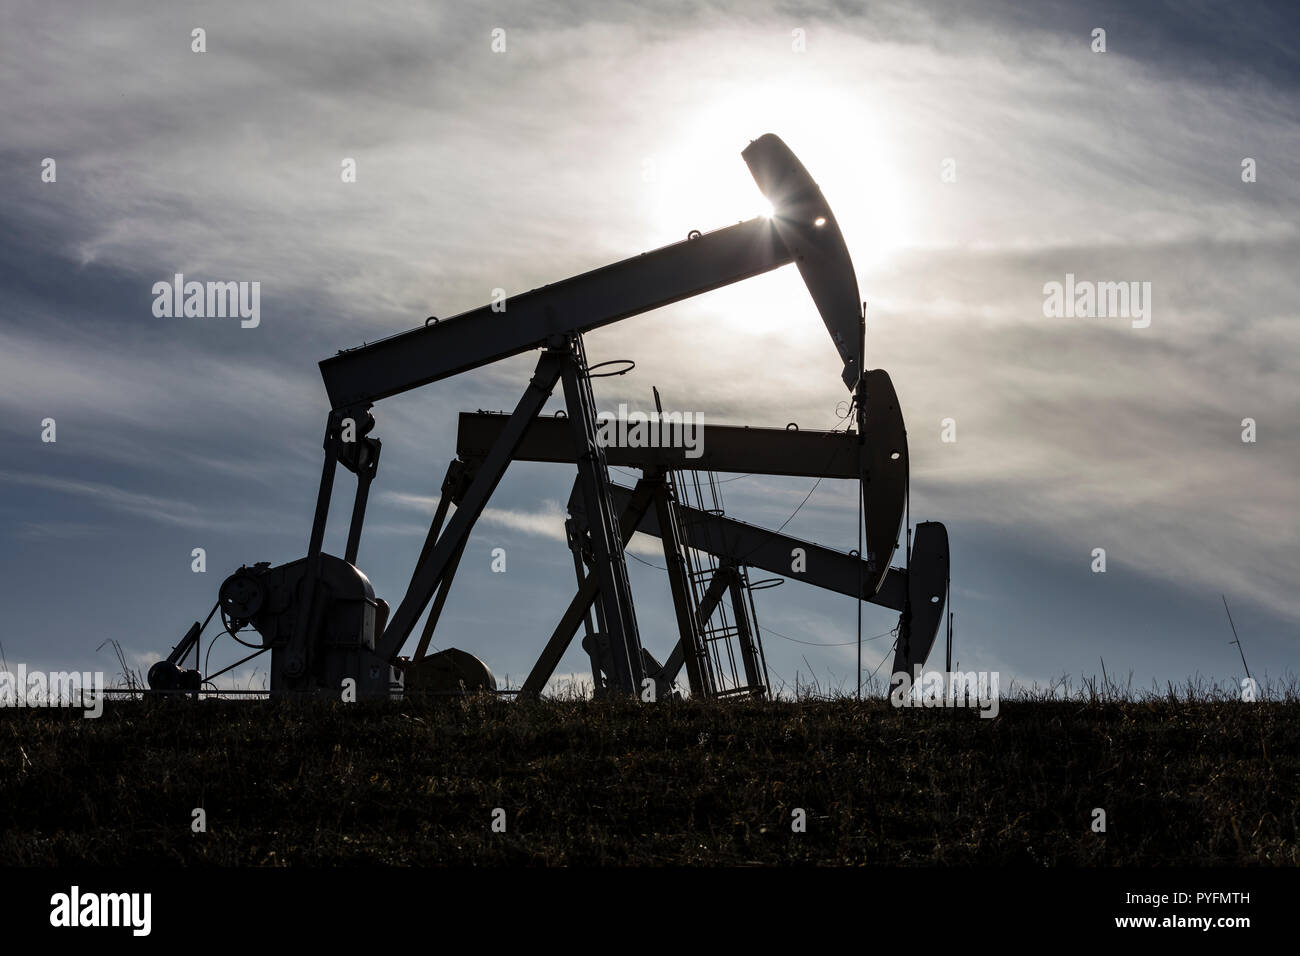 Trio von Öl pumpjacks Arbeiten nördlich von Cochrane, Alberta Kanada Stockfoto